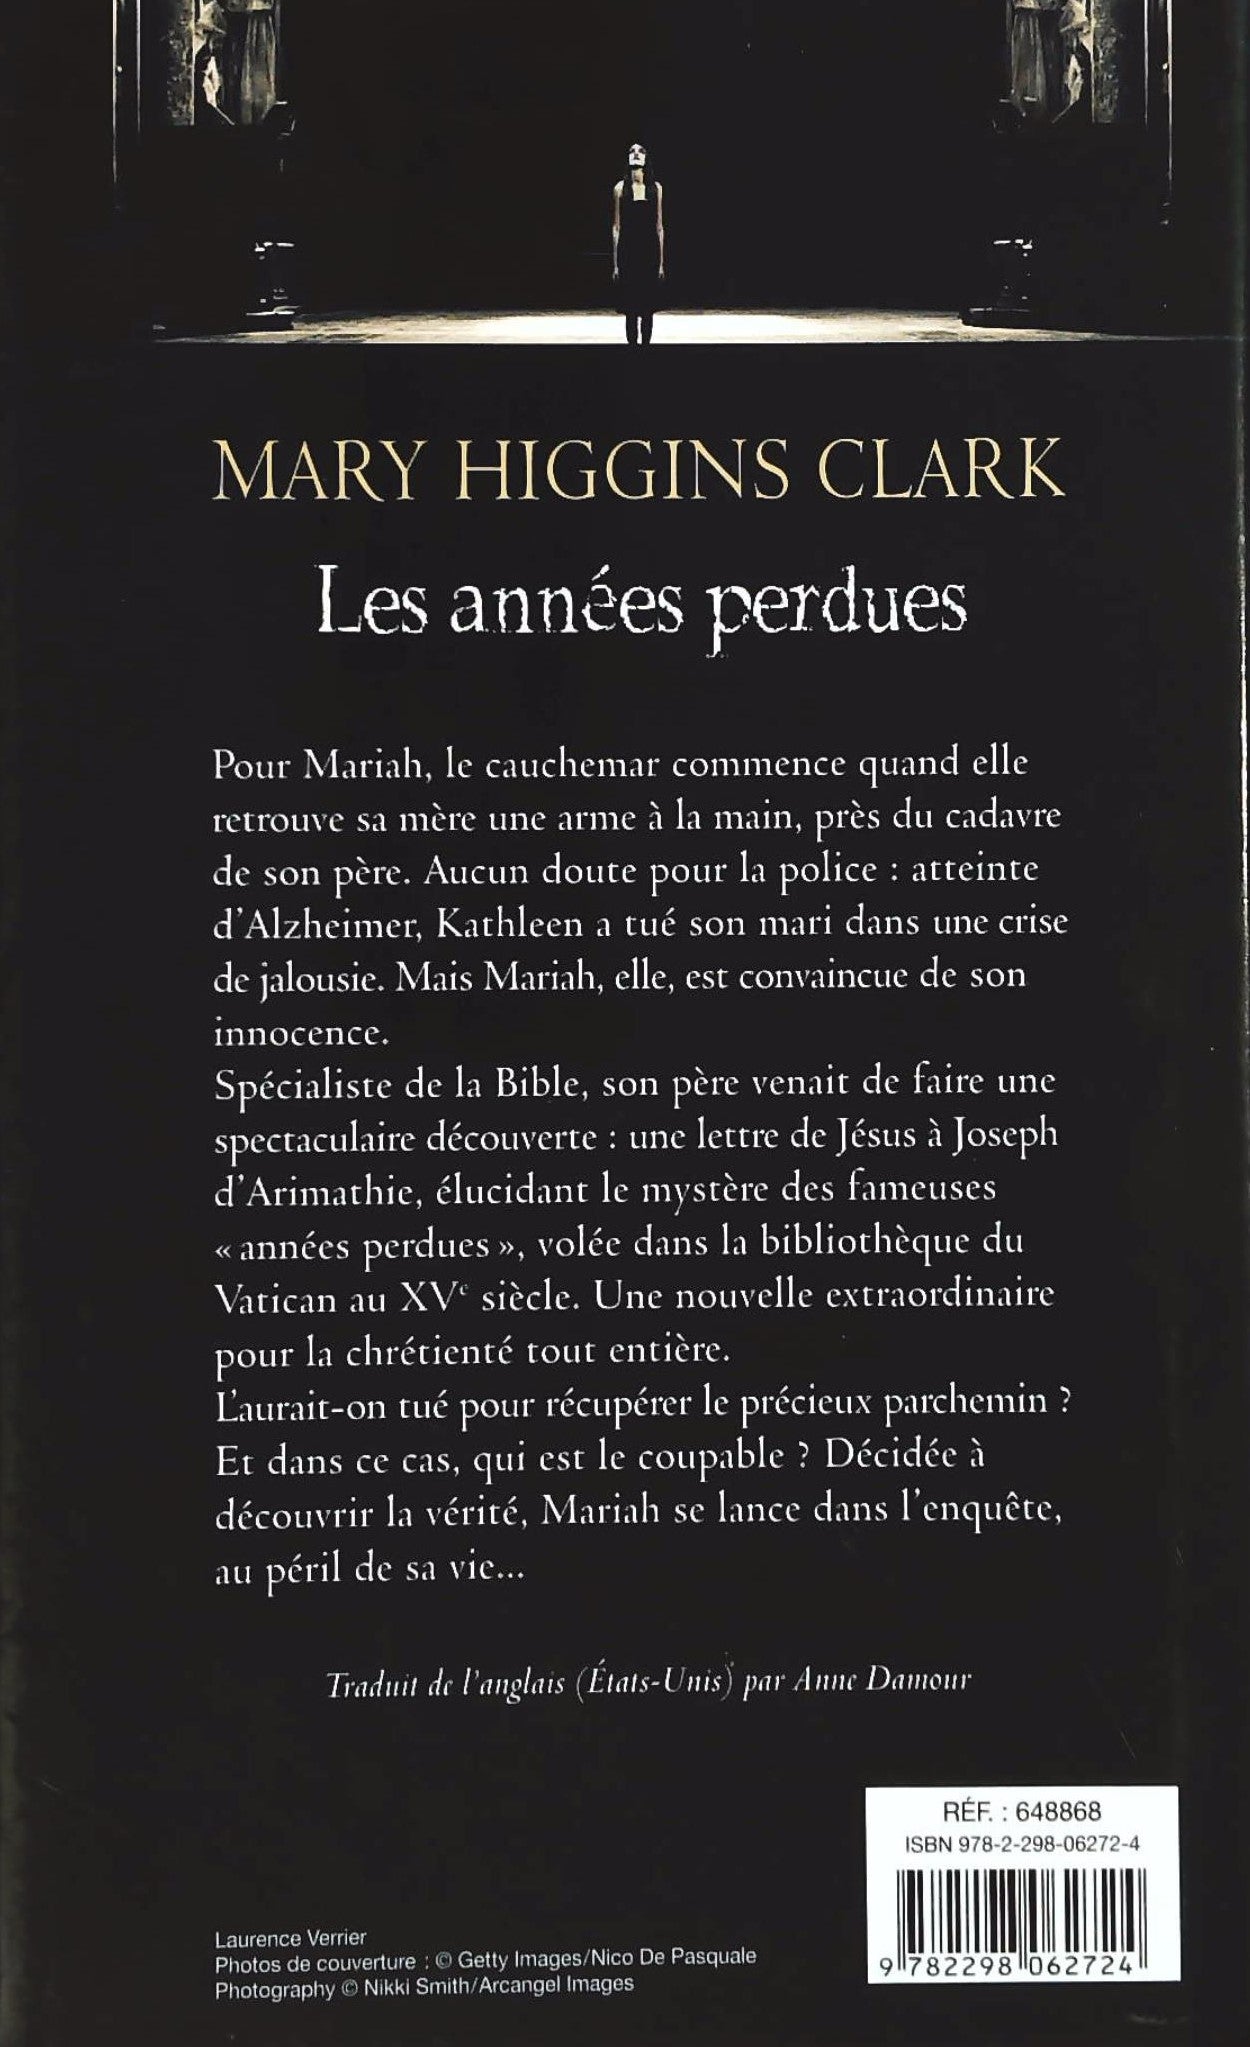 Les années perdues (Mary Higgins Clark)